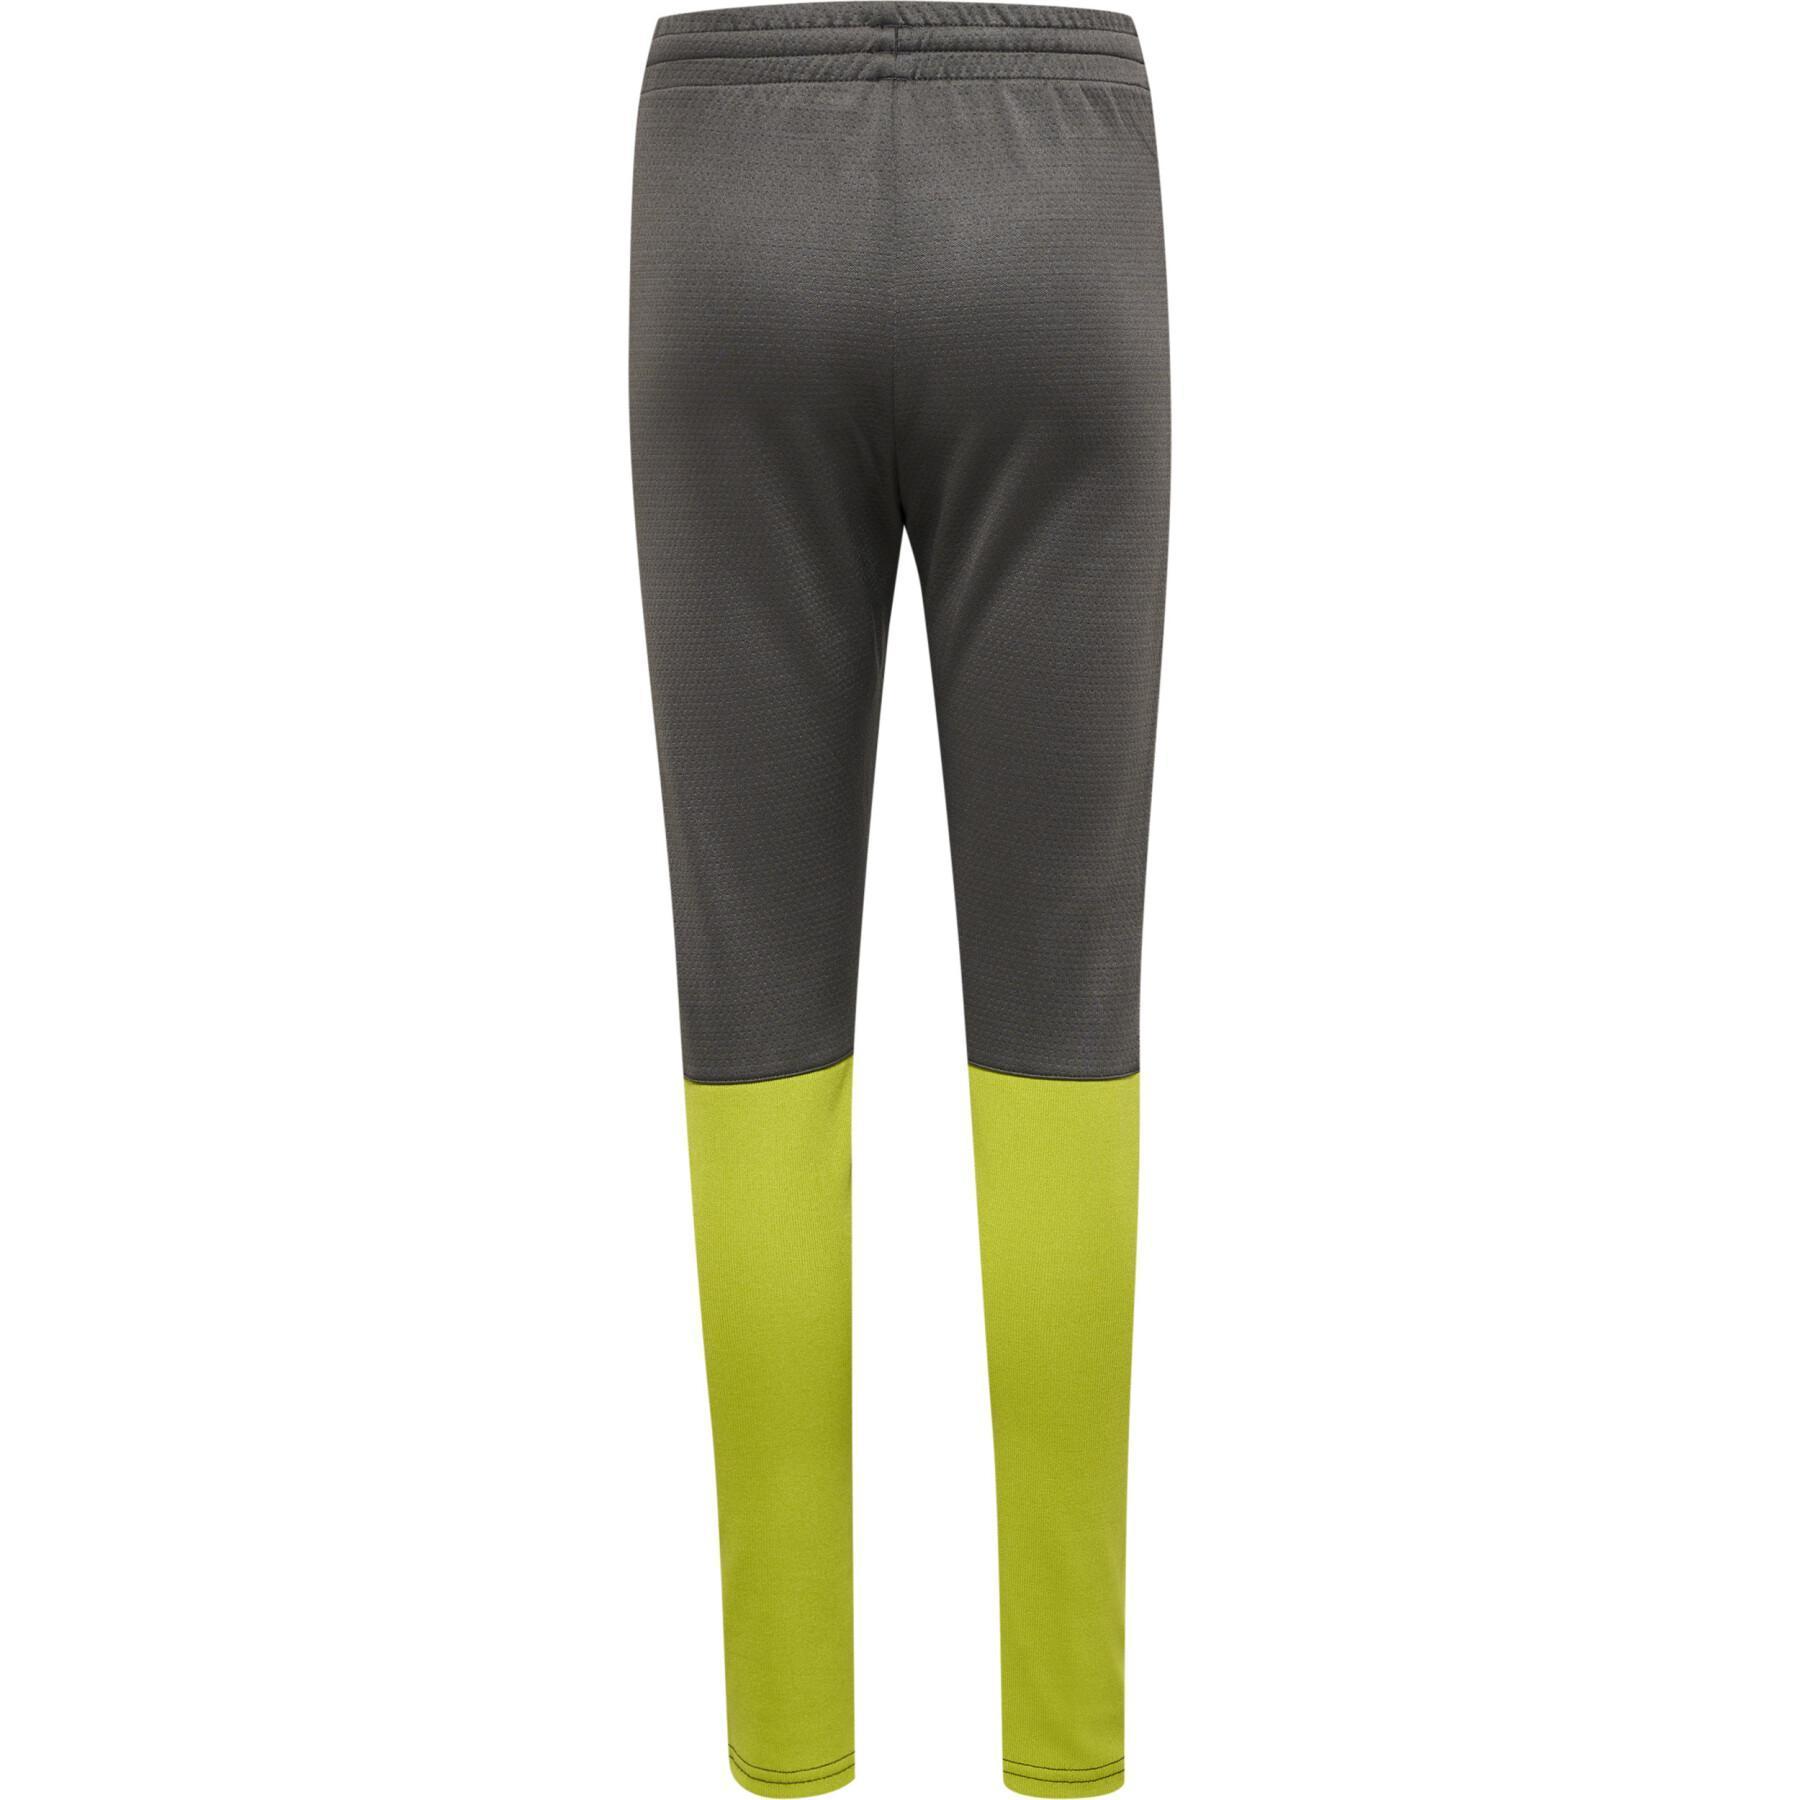 Polyester jogging suit for children Hummel ON-Grid